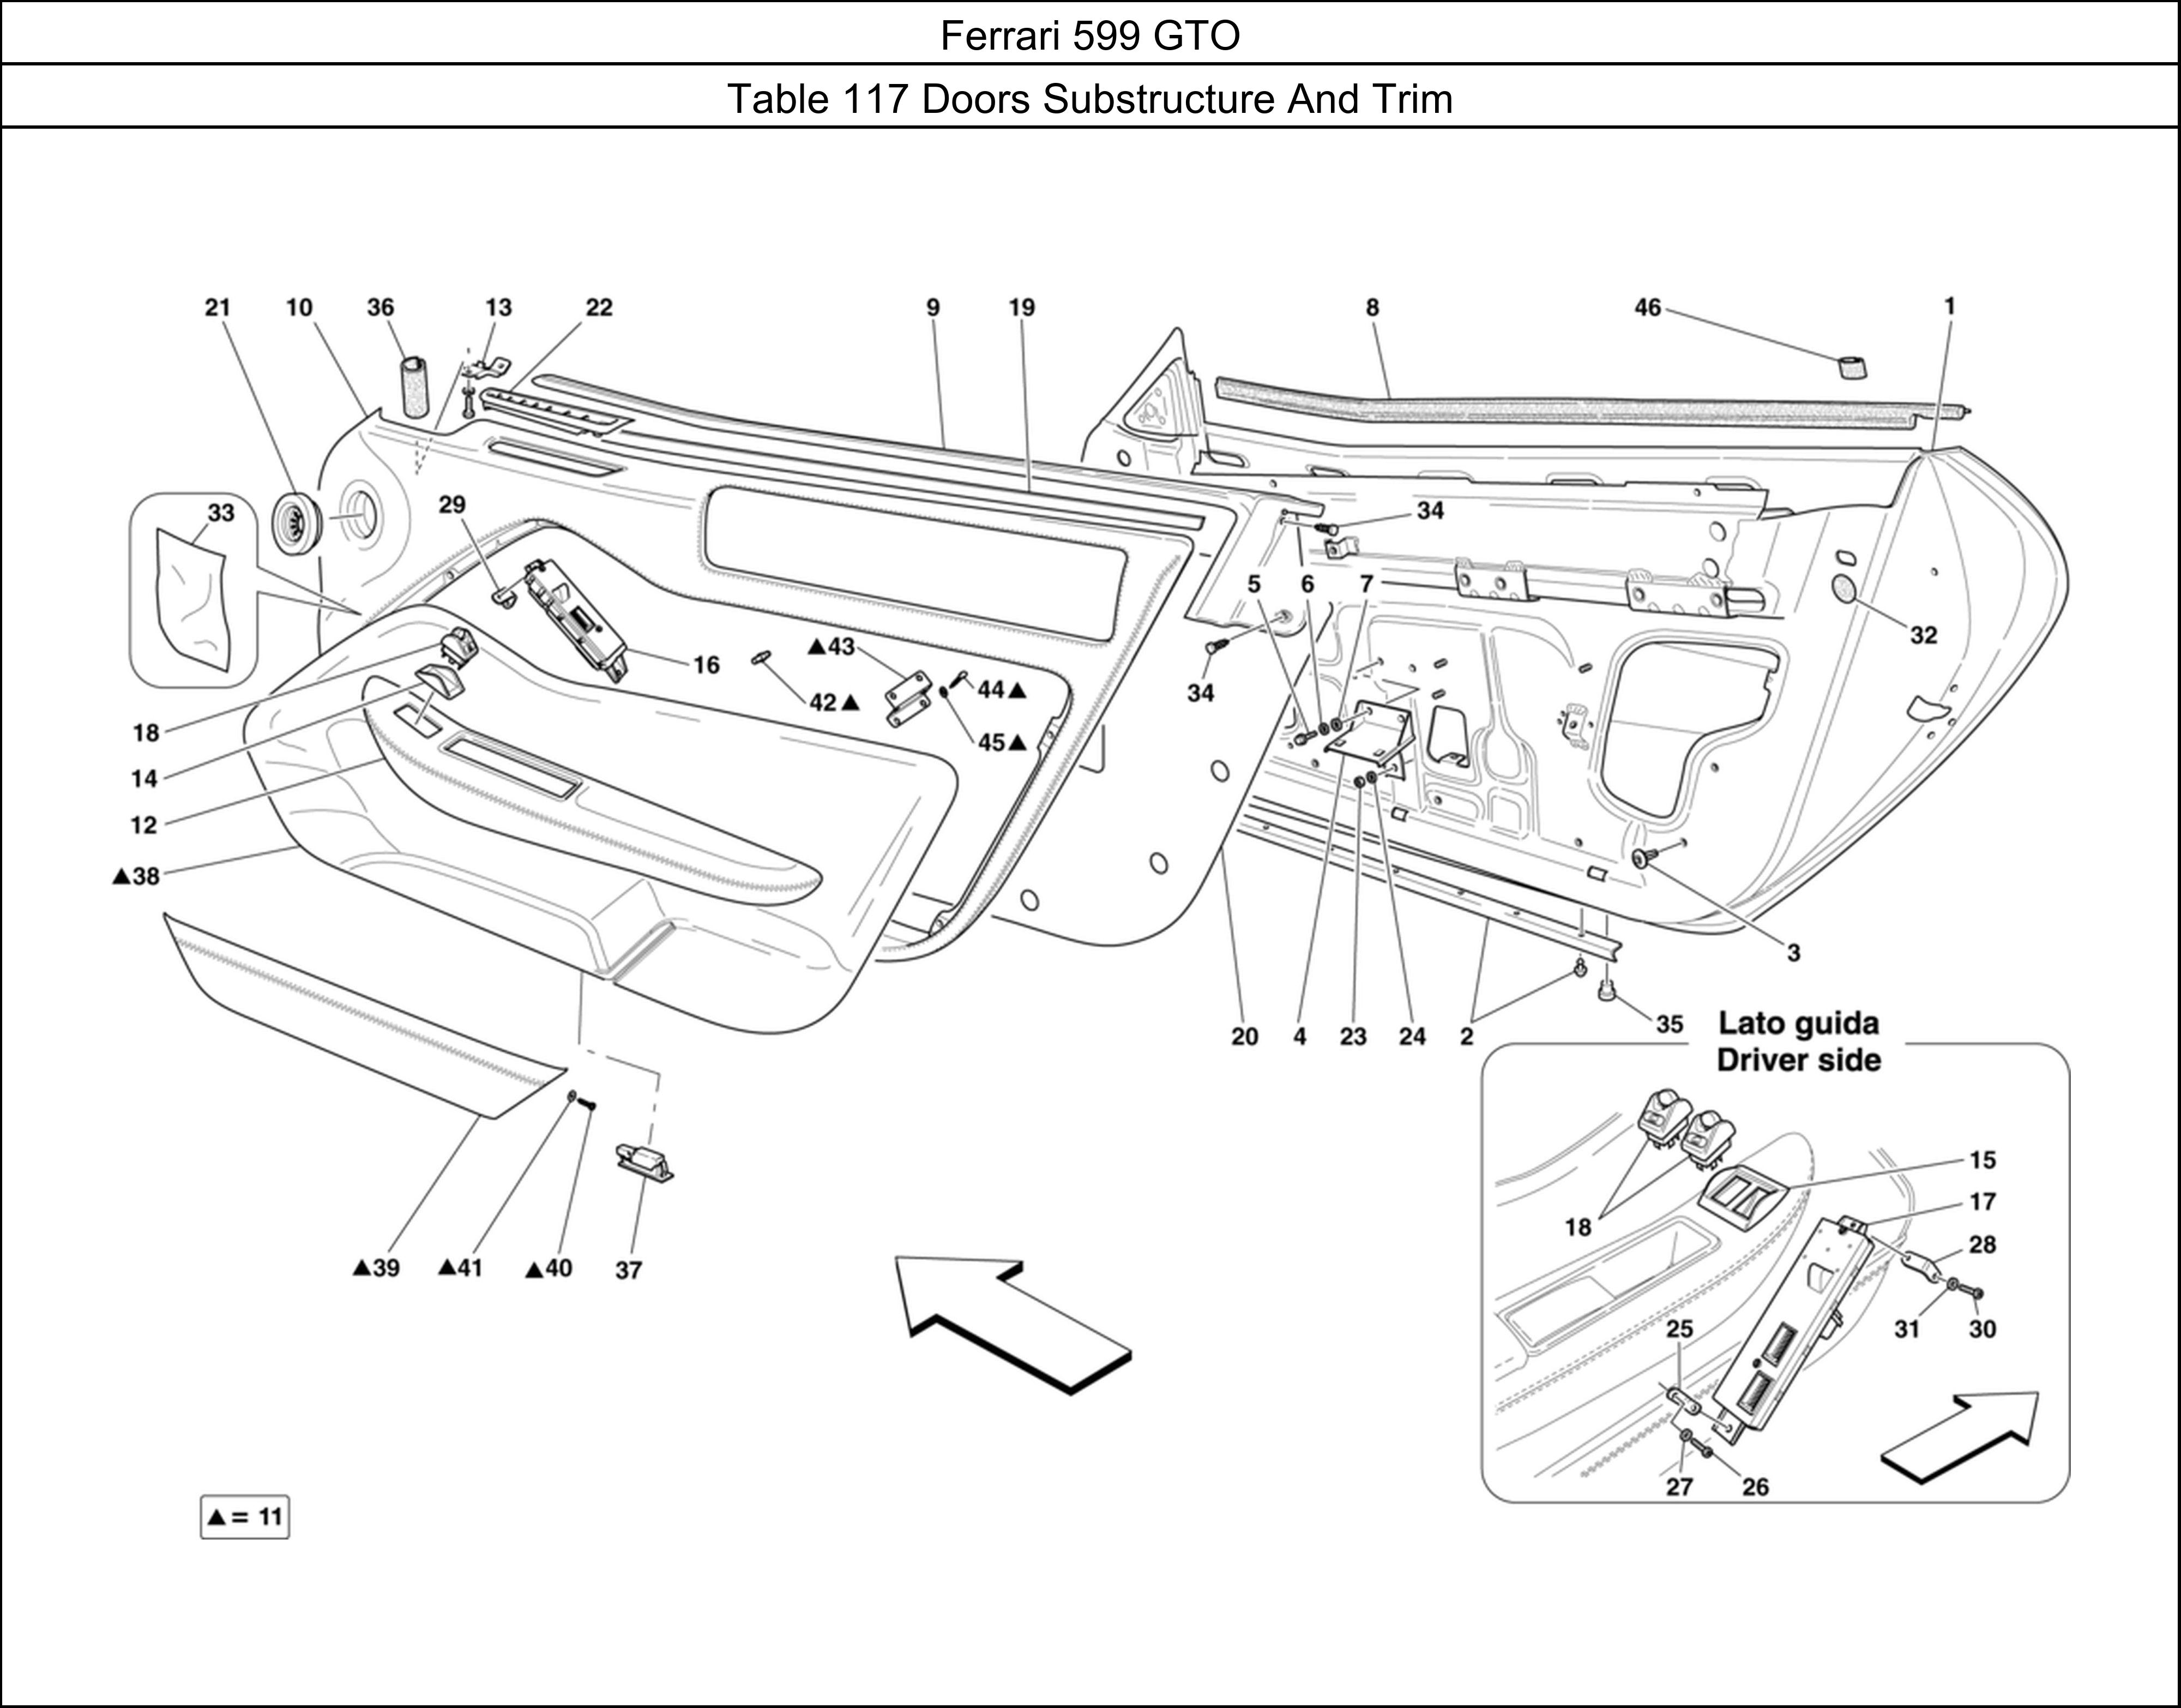 Ferrari Parts Ferrari 599 GTO Table 117 Doors Substructure And Trim